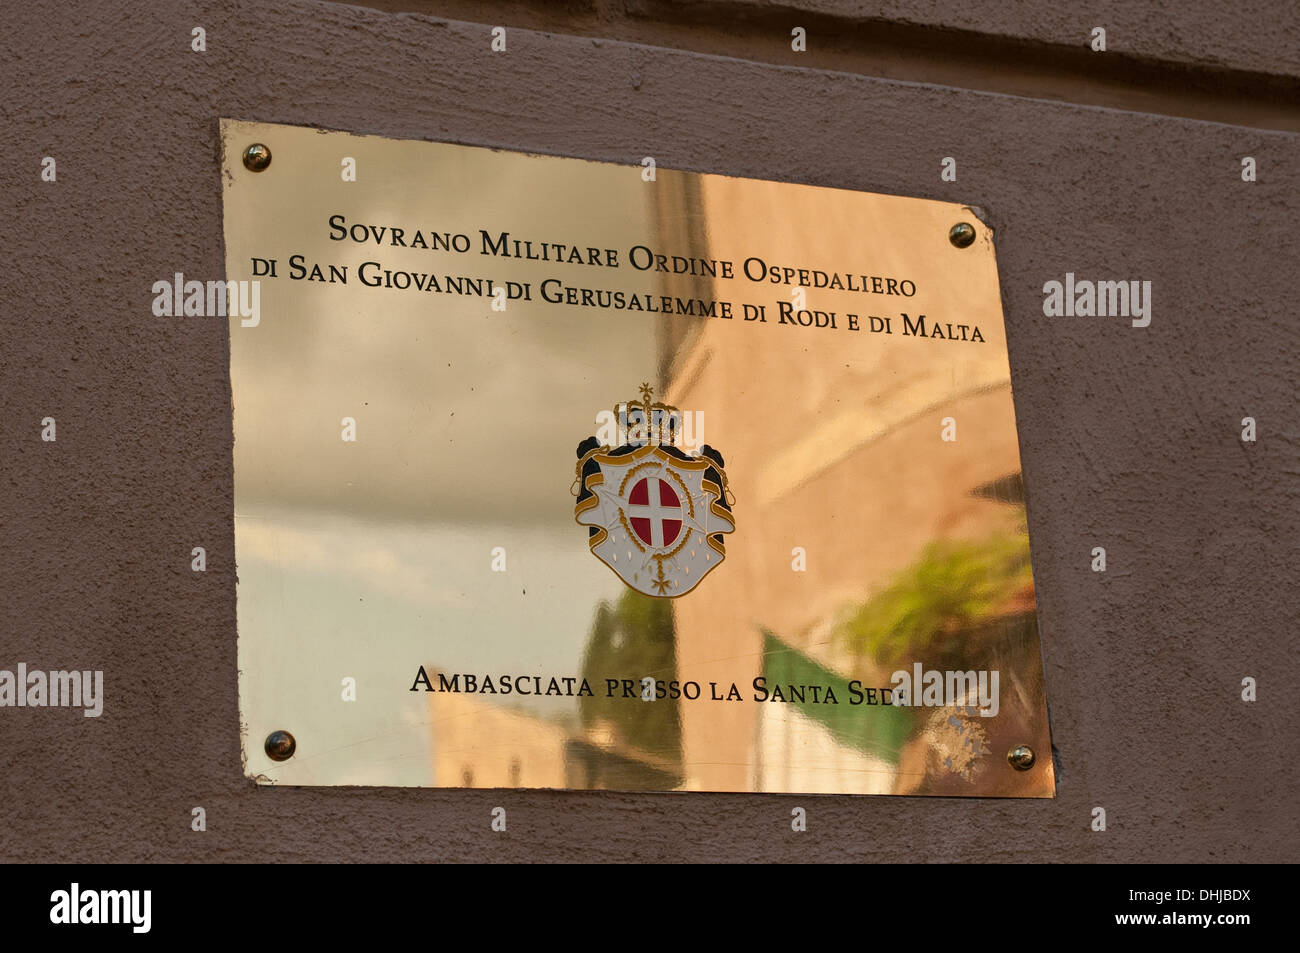 Ambassade de l'Ordre militaire souverain de Malte, Rome, Italie Banque D'Images